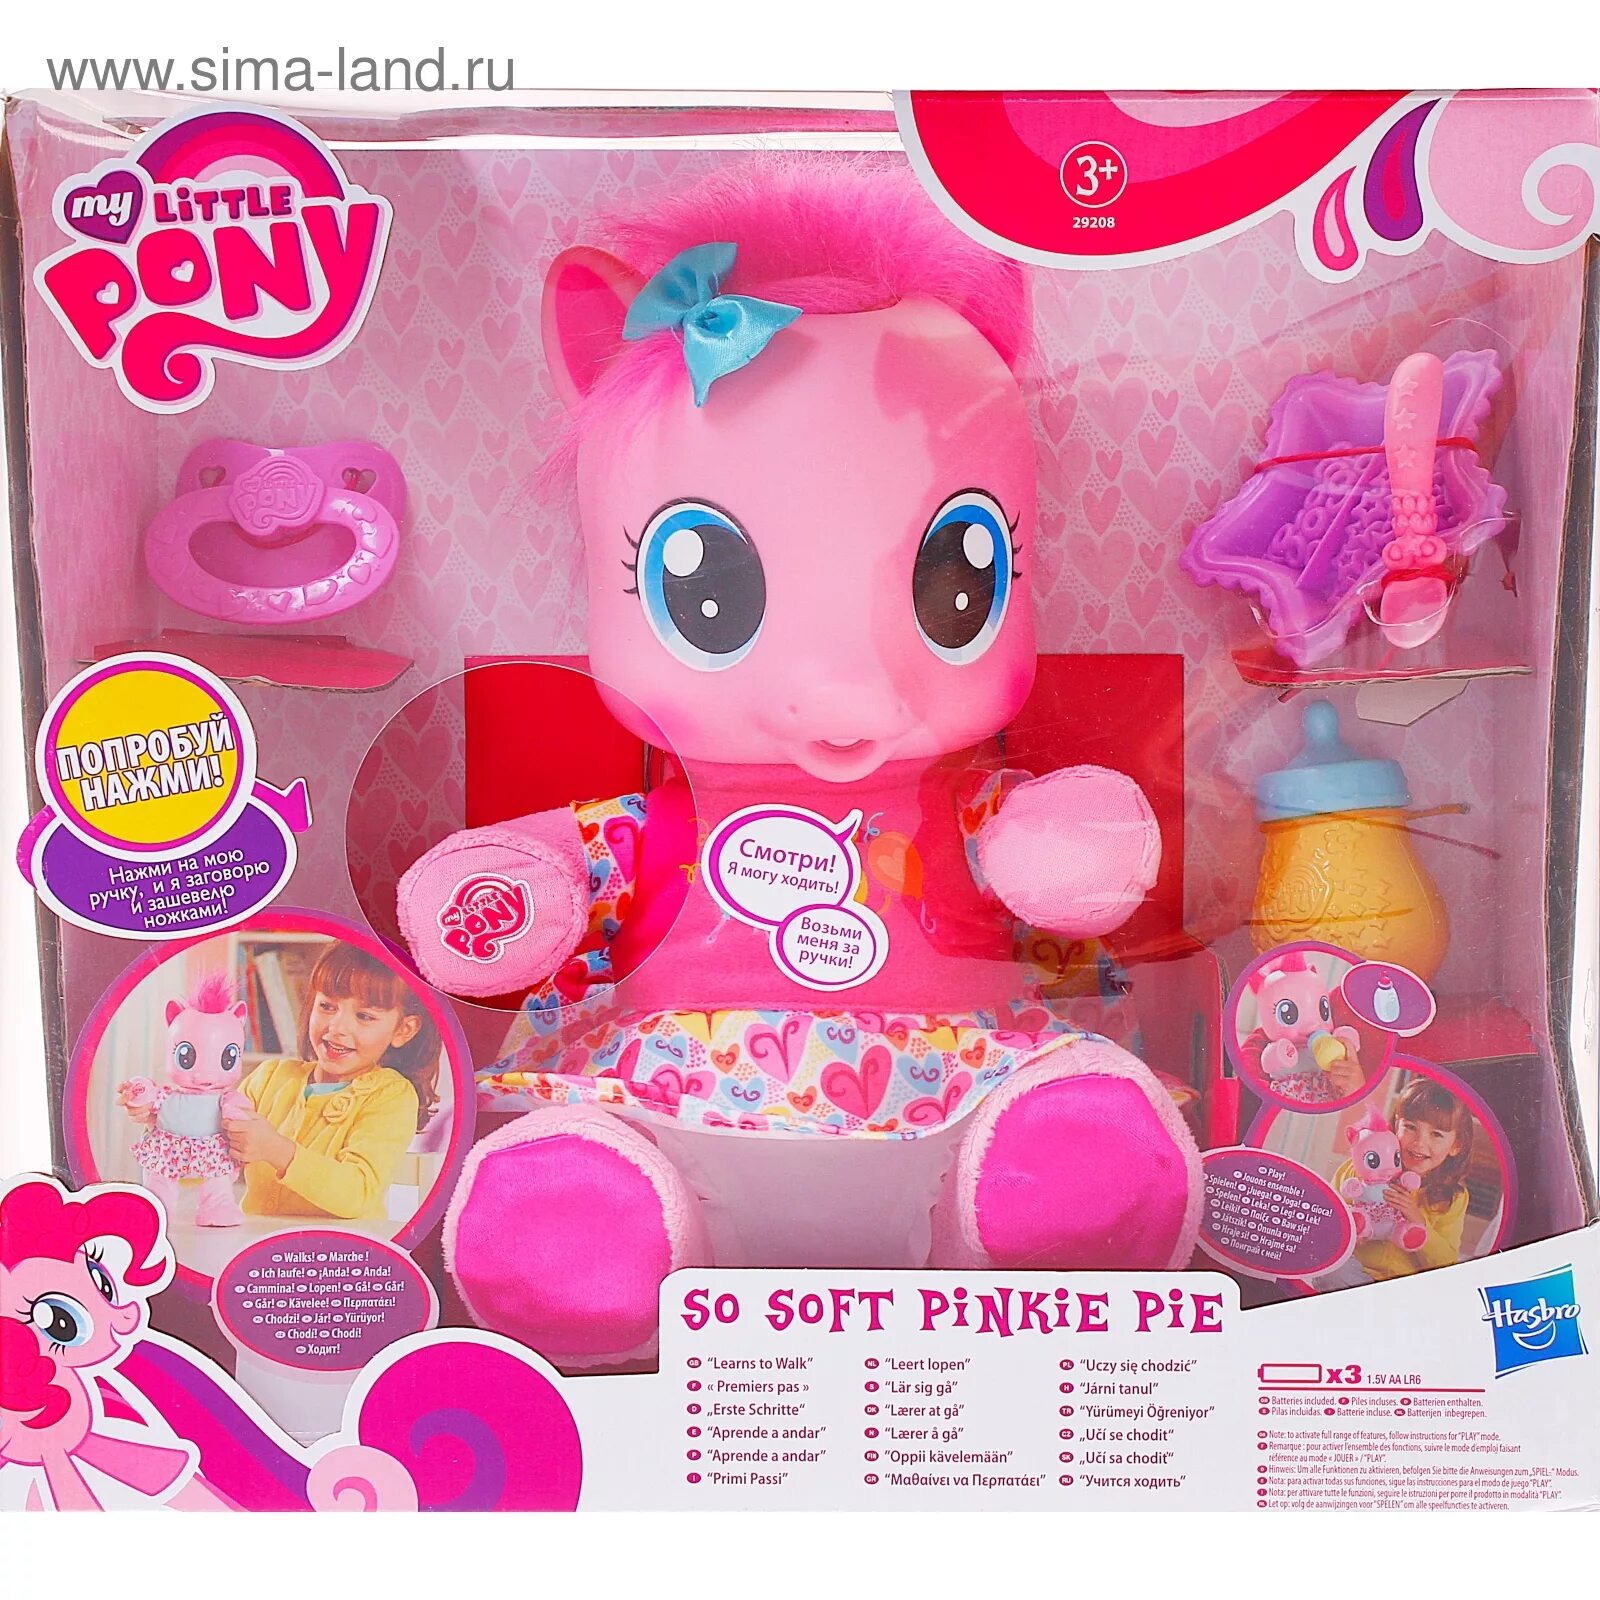 Пинки пай купить. Интерактивная игрушка Hasbro пони "Пинки Пай" 29208121. Фигурка Hasbro Пинки Пай b7818. Малышка Пинки Пай интерактивная игрушка. Интерактивная Малютка Пинки Пай.